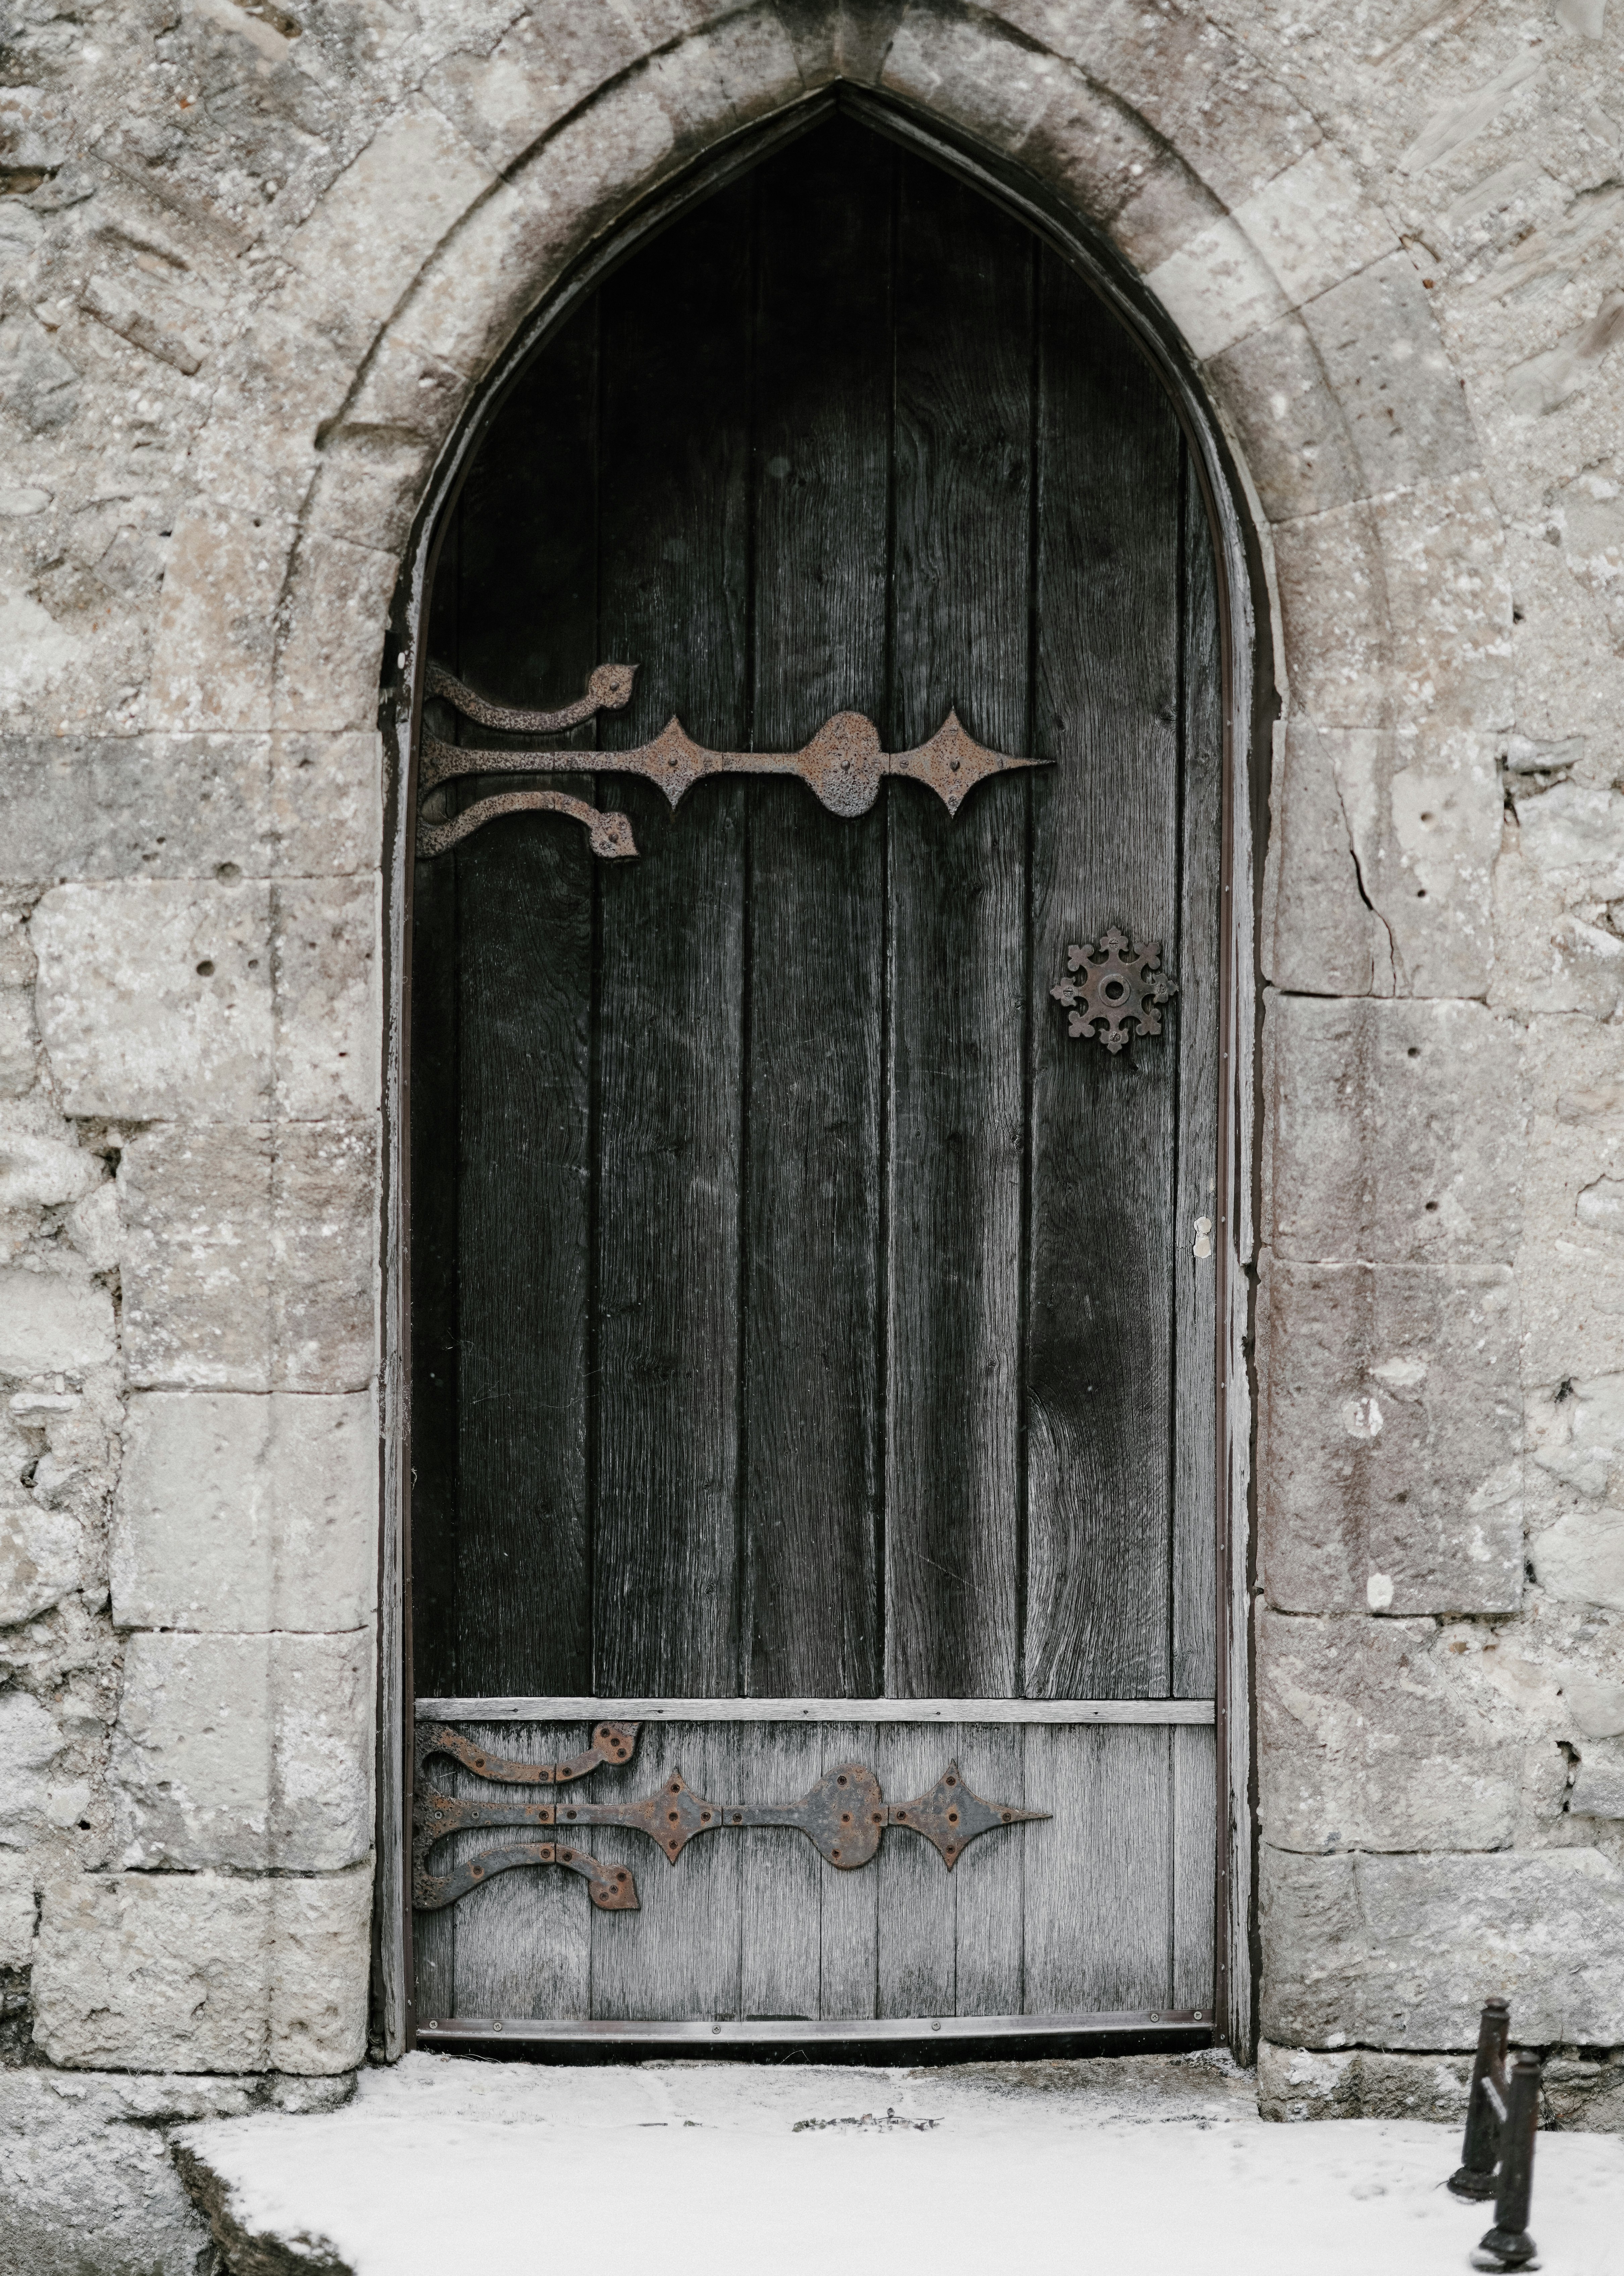 Définition de mettre la clef sous la porte | Dictionnaire français